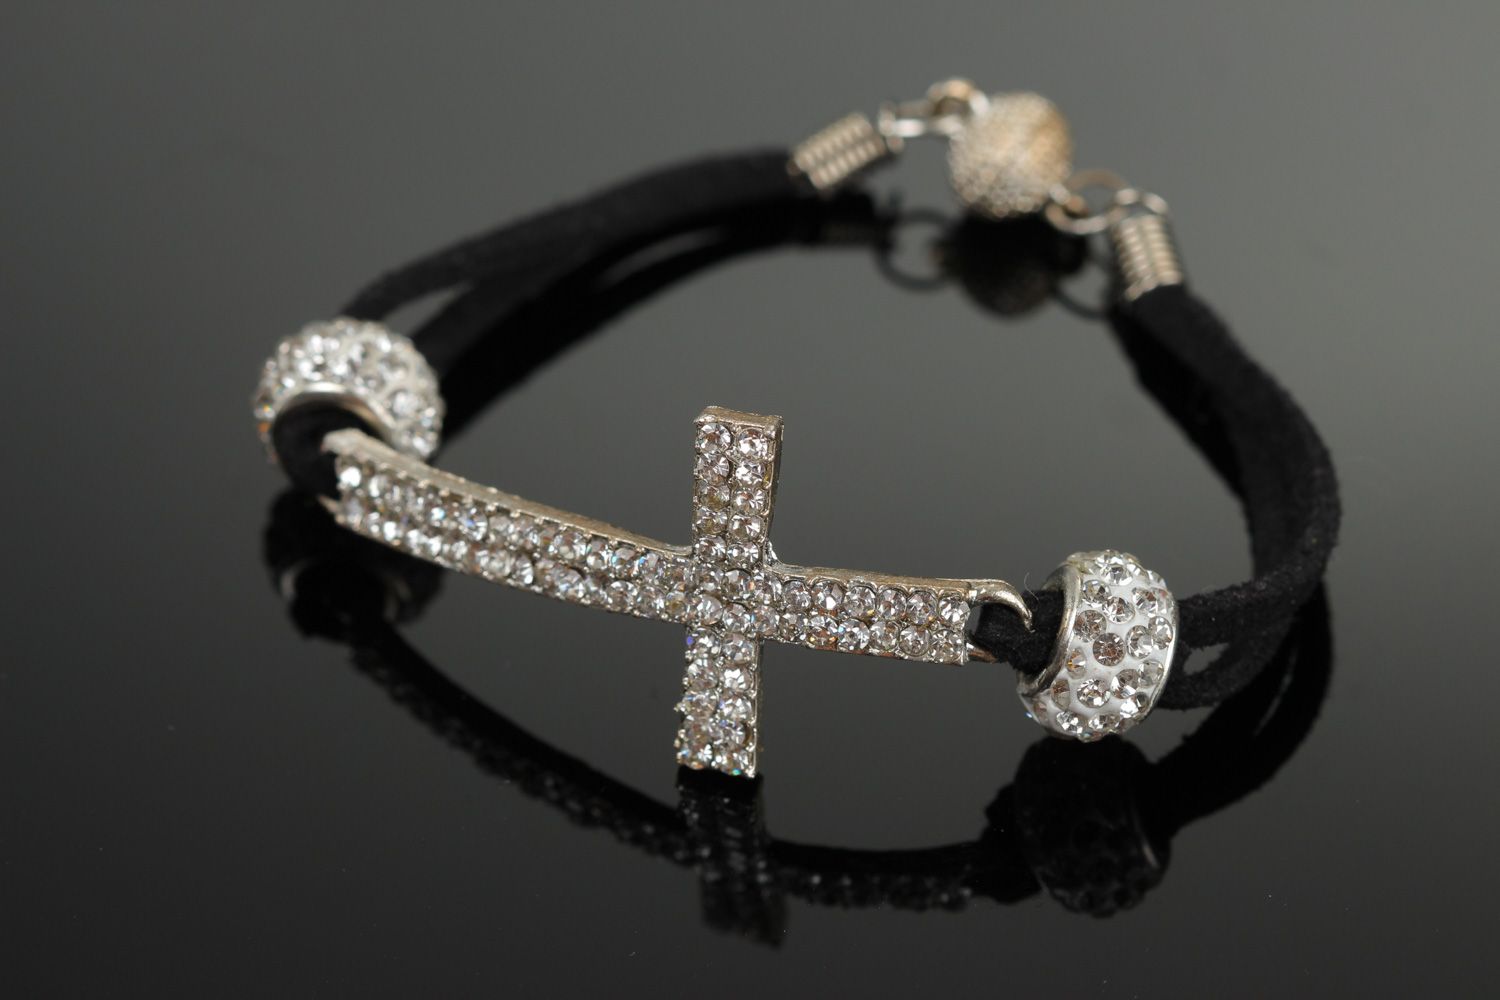 Austria Crystal Bracelet | Jewelry - New Crystal Bracelet Fashion Stone  Beads Rope - Aliexpress